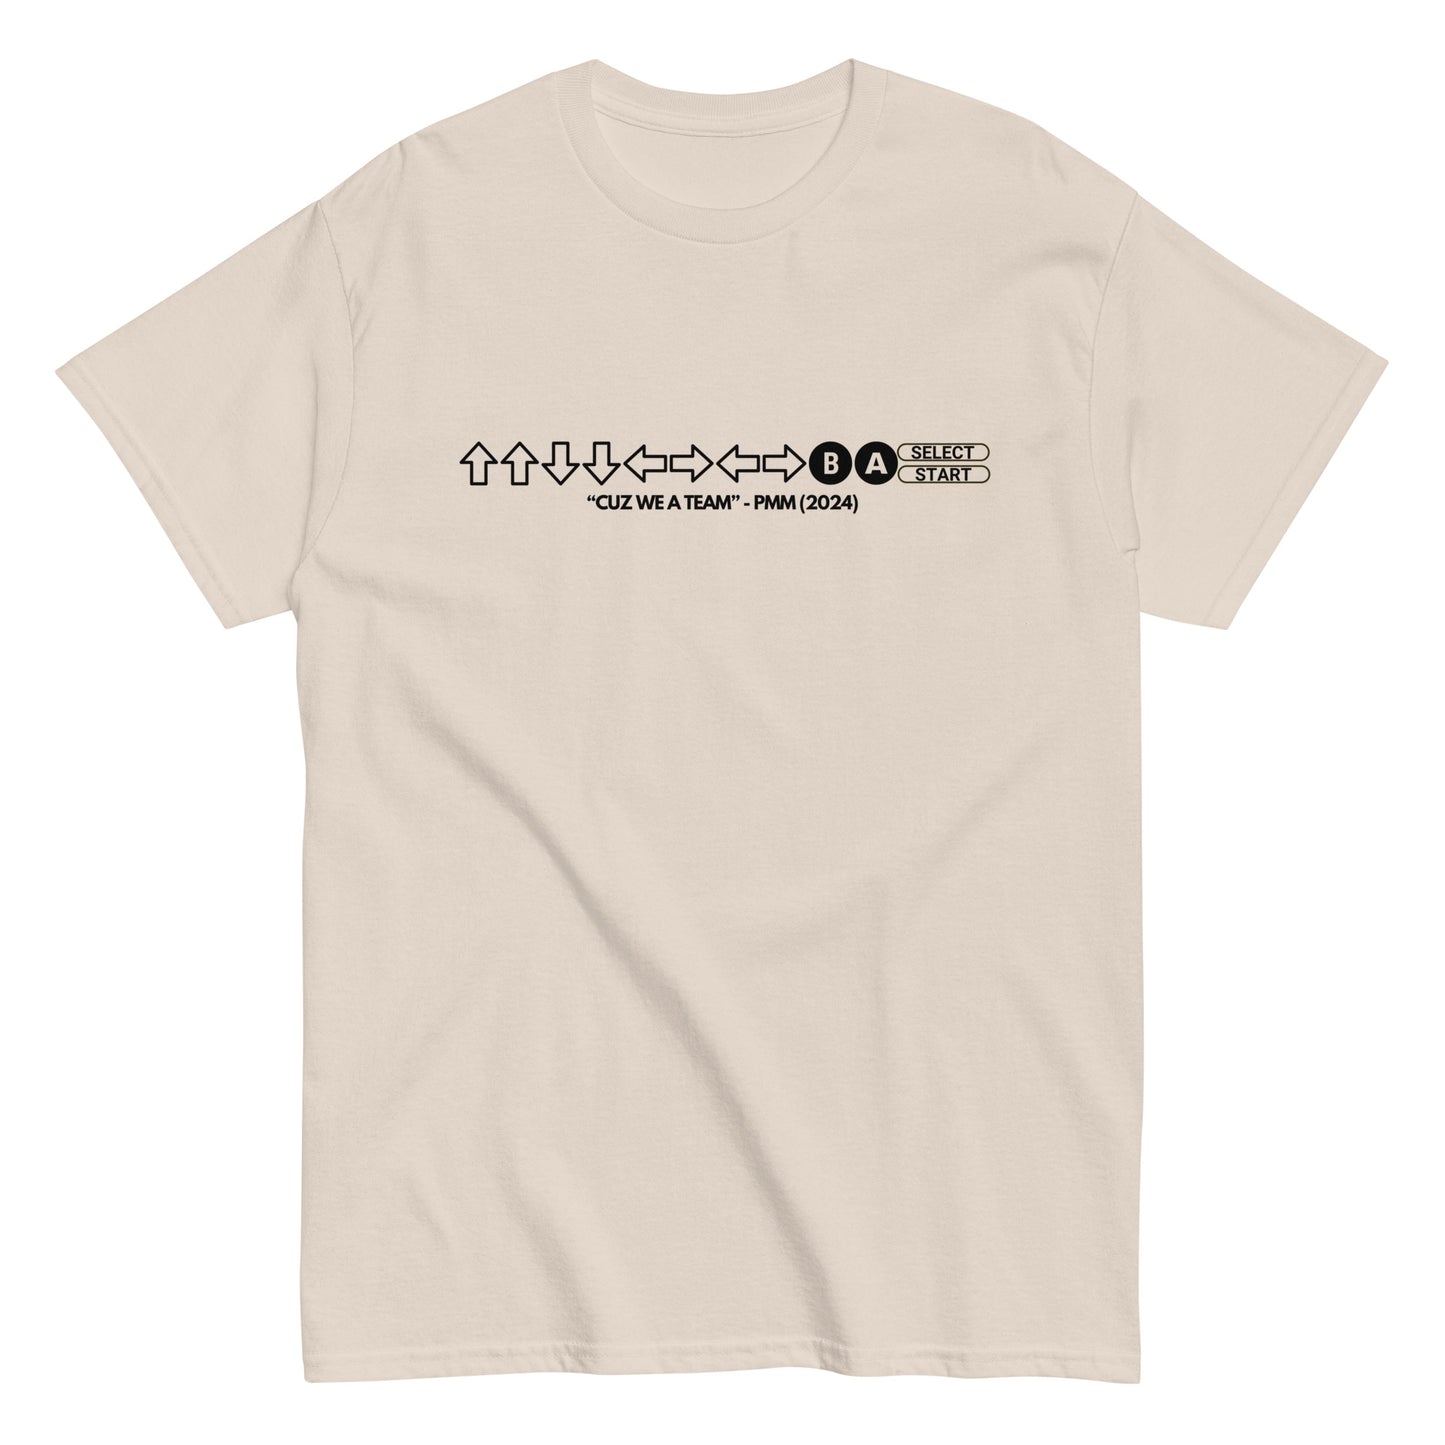 PMM Cheat Code T-Shirt (black text)